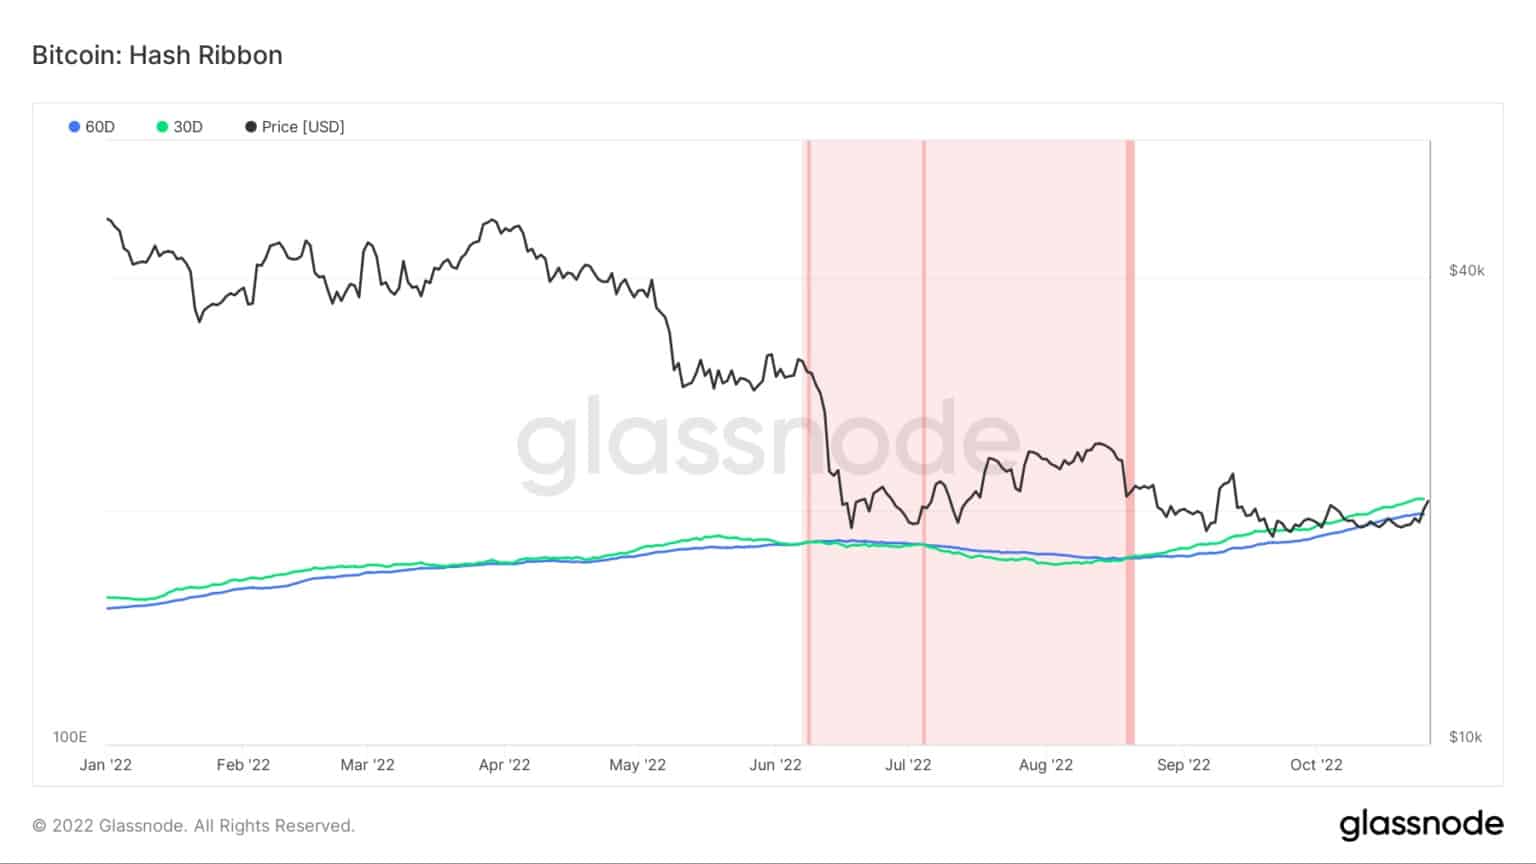 Wykres przedstawiający wskaźnik wstęgi haszowej Bitcoina od stycznia 2022 do października 2022 (Źródło: Glassnode)